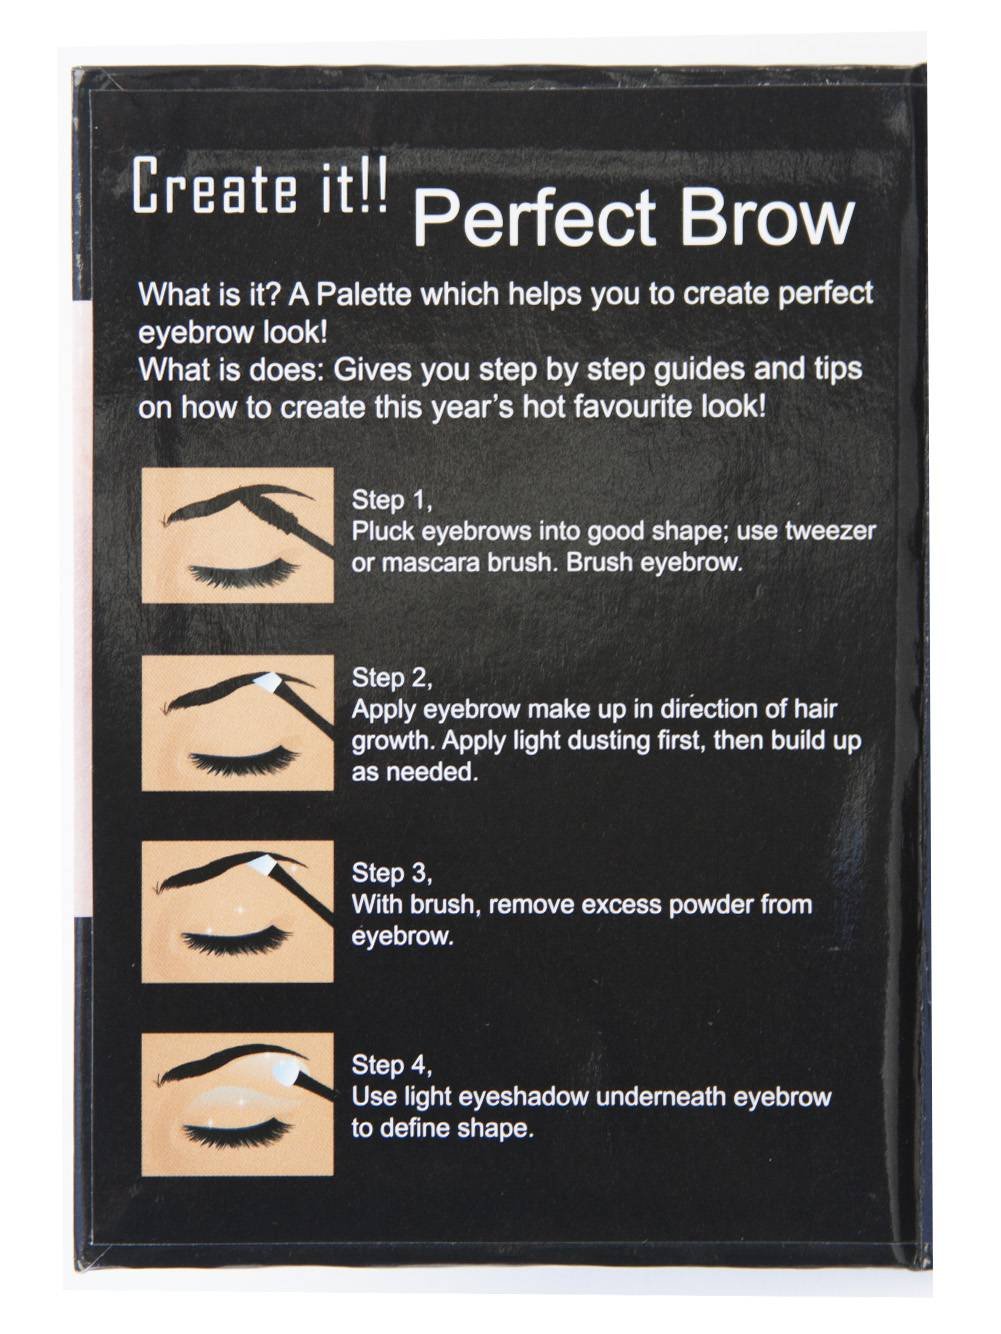 Cameo Perfect Brow Makeup, Dark Brown